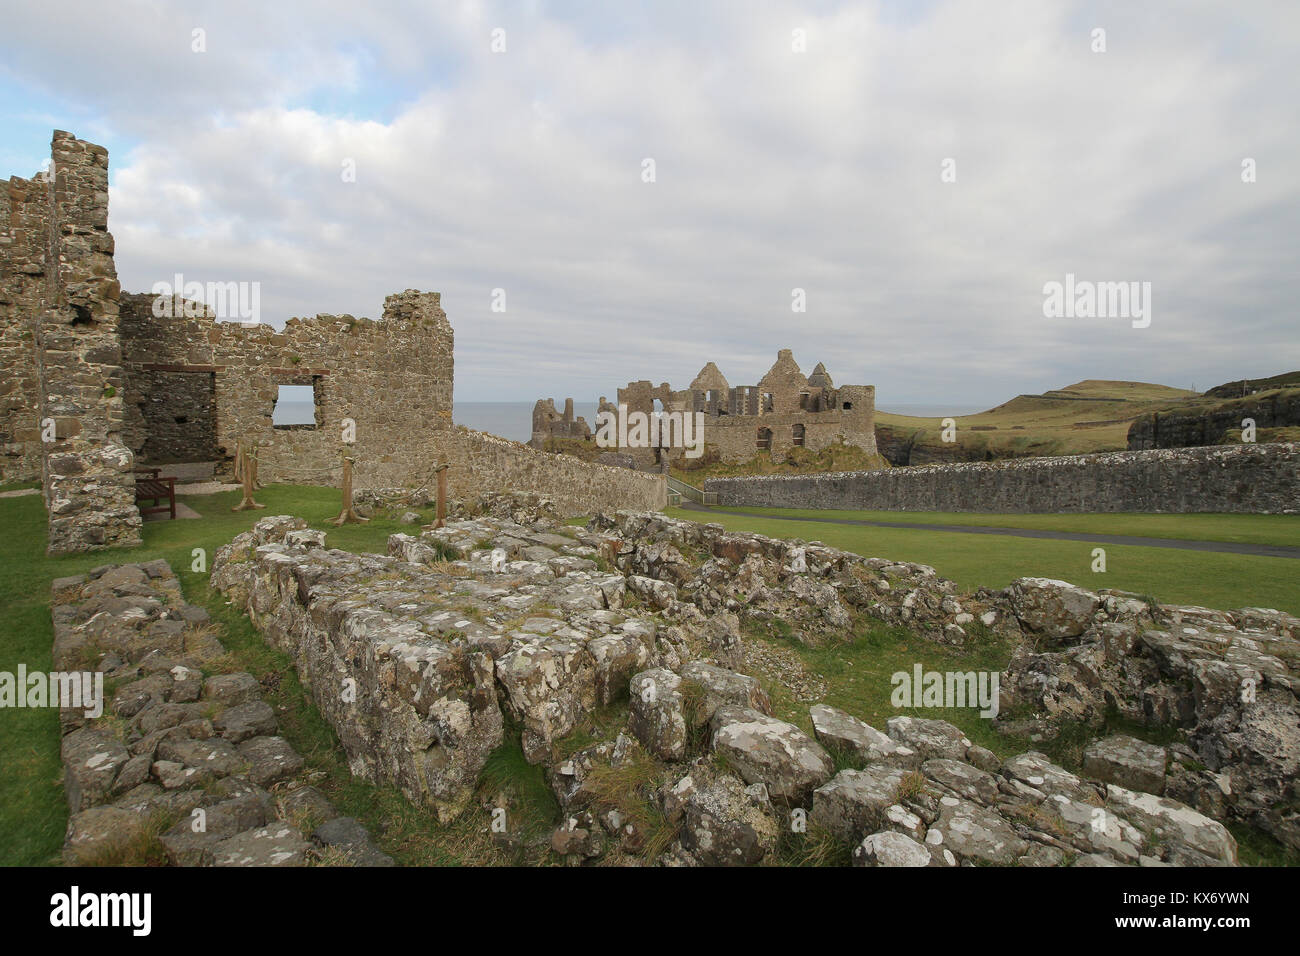 Rovine medievali di Dunluce Castle sulla costa nord dell'Irlanda del Nord. Il castello era la posizione per la casa di Grayjoy nel gioco di troni. Foto Stock